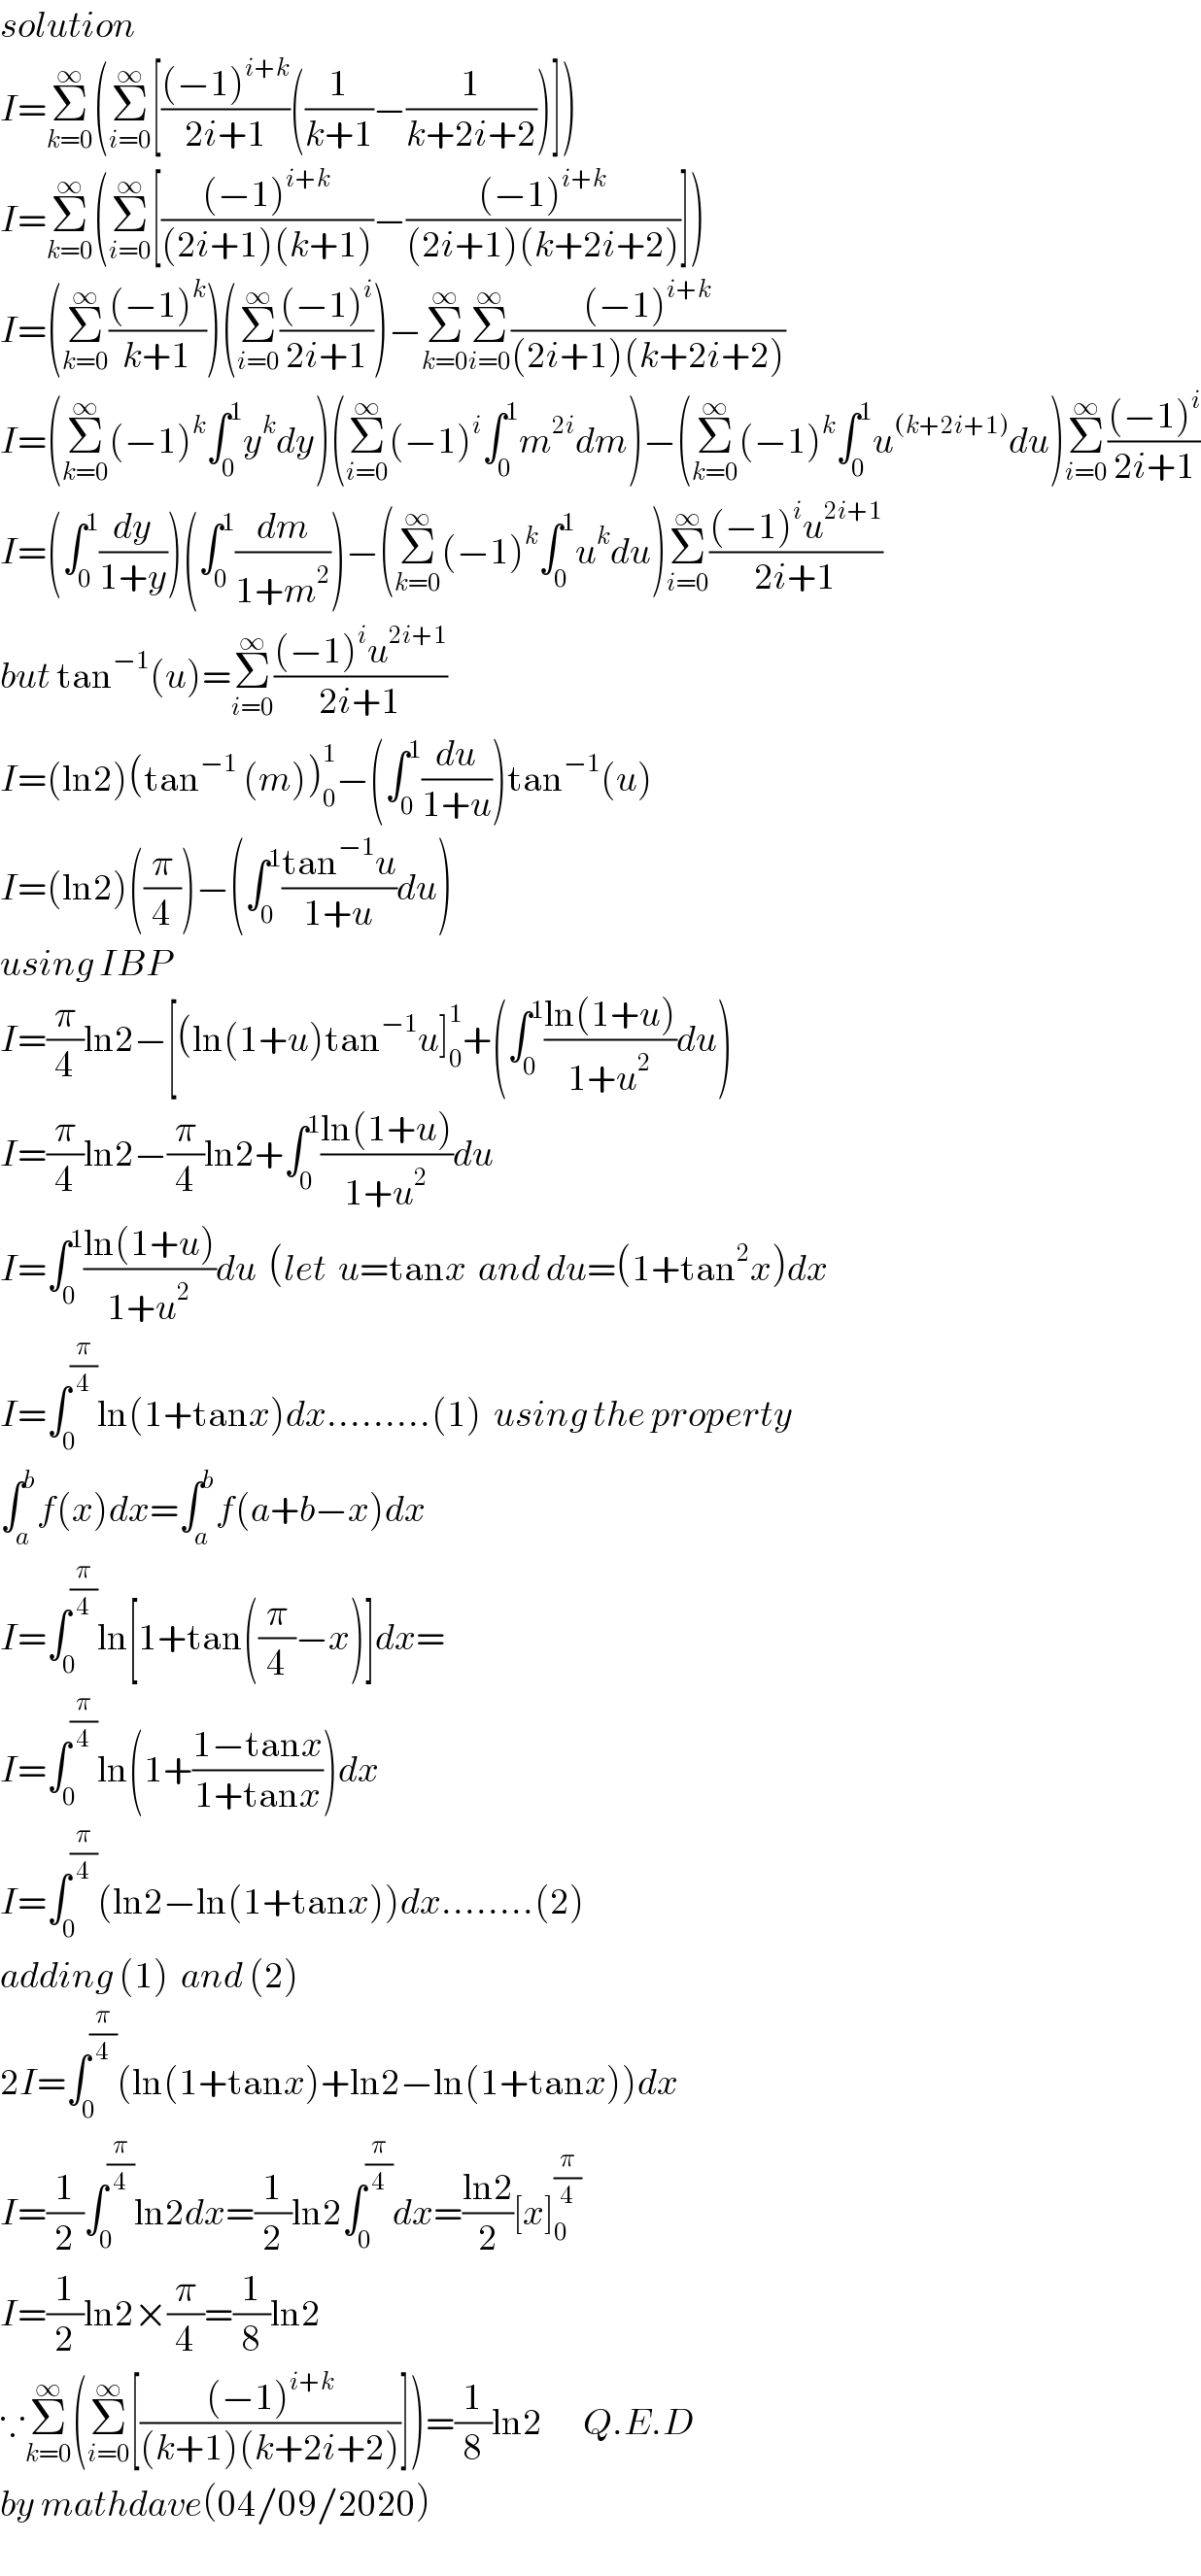 solution  I=Σ_(k=0) ^∞ (Σ_(i=0) ^∞ [(((−1)^(i+k) )/(2i+1))((1/(k+1))−(1/(k+2i+2)))])  I=Σ_(k=0) ^∞ (Σ_(i=0) ^∞ [(((−1)^(i+k) )/((2i+1)(k+1)))−(((−1)^(i+k) )/((2i+1)(k+2i+2)))])  I=(Σ_(k=0) ^∞ (((−1)^k )/(k+1)))(Σ_(i=0) ^∞ (((−1)^i )/(2i+1)))−Σ_(k=0) ^∞ Σ_(i=0) ^∞ (((−1)^(i+k) )/((2i+1)(k+2i+2)))  I=(Σ_(k=0) ^∞ (−1)^k ∫_0 ^1 y^k dy)(Σ_(i=0) ^∞ (−1)^i ∫_0 ^1 m^(2i) dm)−(Σ_(k=0) ^∞ (−1)^k ∫_0 ^1 u^((k+2i+1)) du)Σ_(i=0) ^∞ (((−1)^i )/(2i+1))  I=(∫_0 ^1 (dy/(1+y)))(∫_0 ^1 (dm/(1+m^2 )))−(Σ_(k=0) ^∞ (−1)^k ∫_0 ^1 u^k du)Σ_(i=0) ^∞ (((−1)^i u^(2i+1) )/(2i+1))  but tan^(−1) (u)=Σ_(i=0) ^∞ (((−1)^i u^(2i+1) )/(2i+1))  I=(ln2)(tan^(−1)  (m))_0 ^1 −(∫_0 ^1 (du/(1+u)))tan^(−1) (u)  I=(ln2)((π/4))−(∫_0 ^1 ((tan^(−1) u)/(1+u))du)  using IBP  I=(π/4)ln2−[(ln(1+u)tan^(−1) u]_0 ^1 +(∫_0 ^1 ((ln(1+u))/(1+u^2 ))du)  I=(π/4)ln2−(π/4)ln2+∫_0 ^1 ((ln(1+u))/(1+u^2 ))du  I=∫_0 ^1 ((ln(1+u))/(1+u^2 ))du  (let  u=tanx  and du=(1+tan^2 x)dx  I=∫_0 ^(π/4) ln(1+tanx)dx.........(1)  using the property  ∫_a ^b f(x)dx=∫_a ^b f(a+b−x)dx  I=∫_0 ^(π/4) ln[1+tan((π/4)−x)]dx=  I=∫_0 ^(π/4) ln(1+((1−tanx)/(1+tanx)))dx  I=∫_0 ^(π/4) (ln2−ln(1+tanx))dx........(2)  adding (1)  and (2)  2I=∫_0 ^(π/4) (ln(1+tanx)+ln2−ln(1+tanx))dx  I=(1/2)∫_0 ^(π/4) ln2dx=(1/2)ln2∫_0 ^(π/4) dx=((ln2)/2)[x]_0 ^(π/4)   I=(1/2)ln2×(π/4)=(1/8)ln2  ∵Σ_(k=0) ^∞ (Σ_(i=0) ^∞ [(((−1)^(i+k) )/((k+1)(k+2i+2)))])=(1/8)ln2       Q.E.D  by mathdave(04/09/2020)  